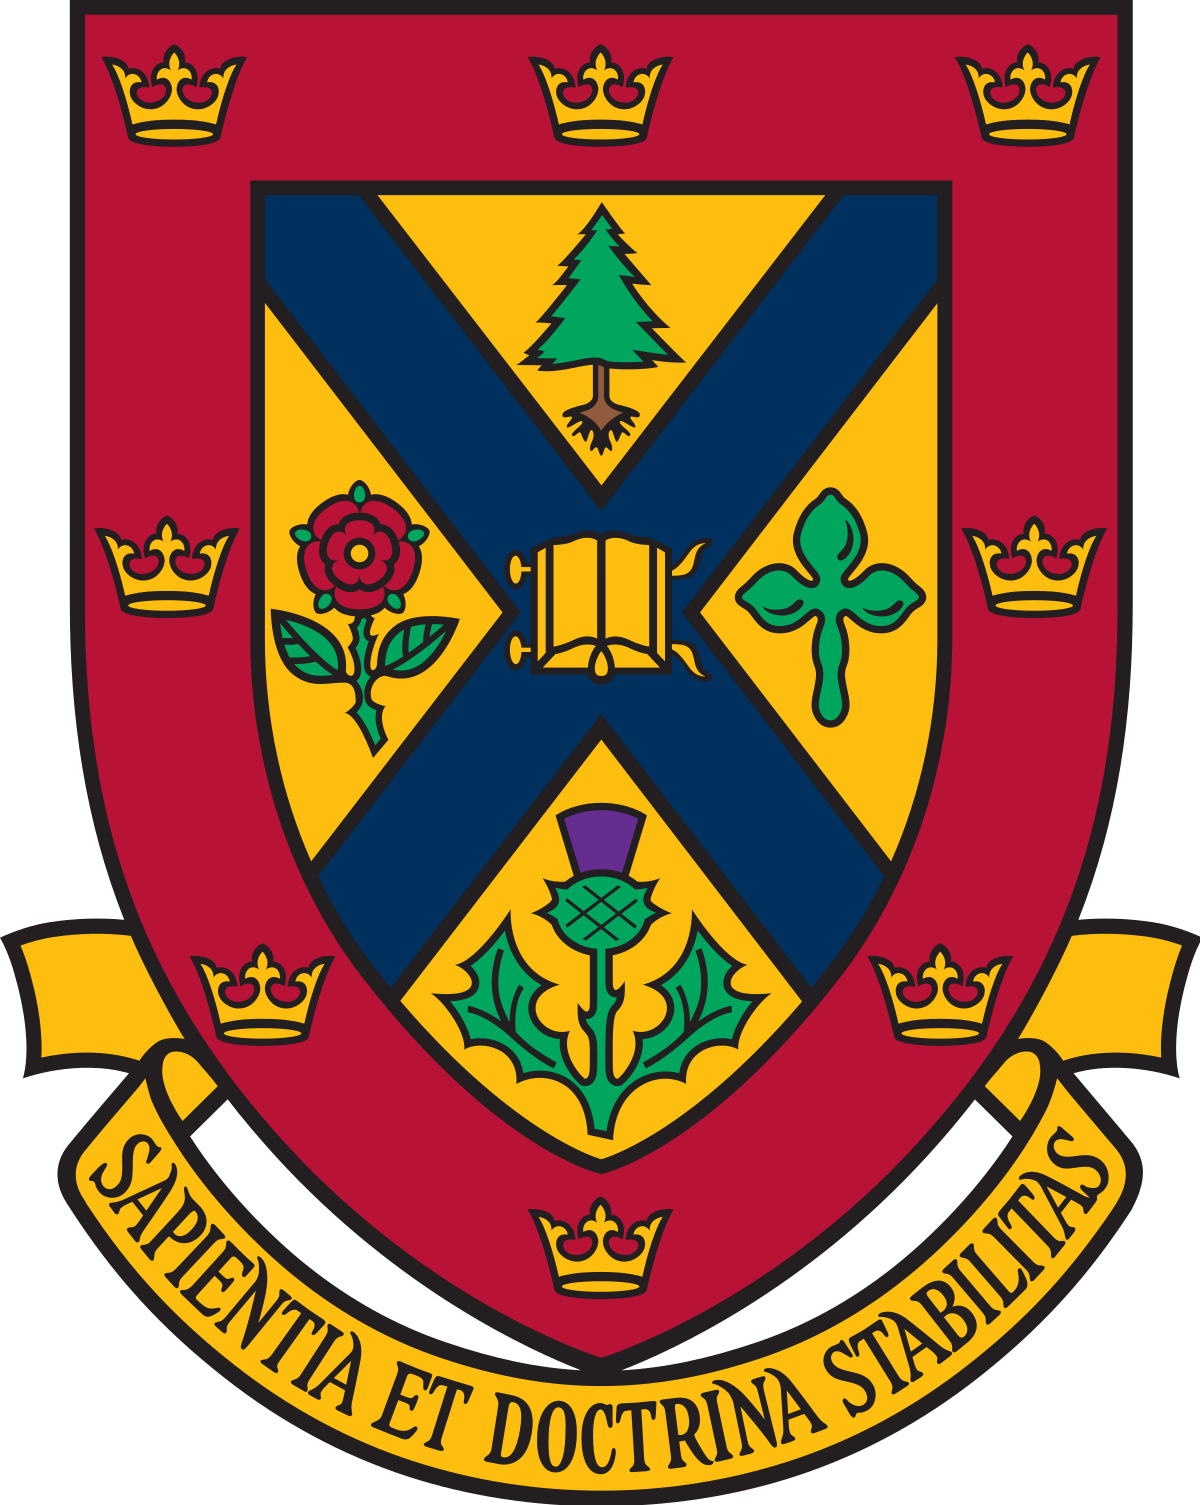 Queen's-University-logo